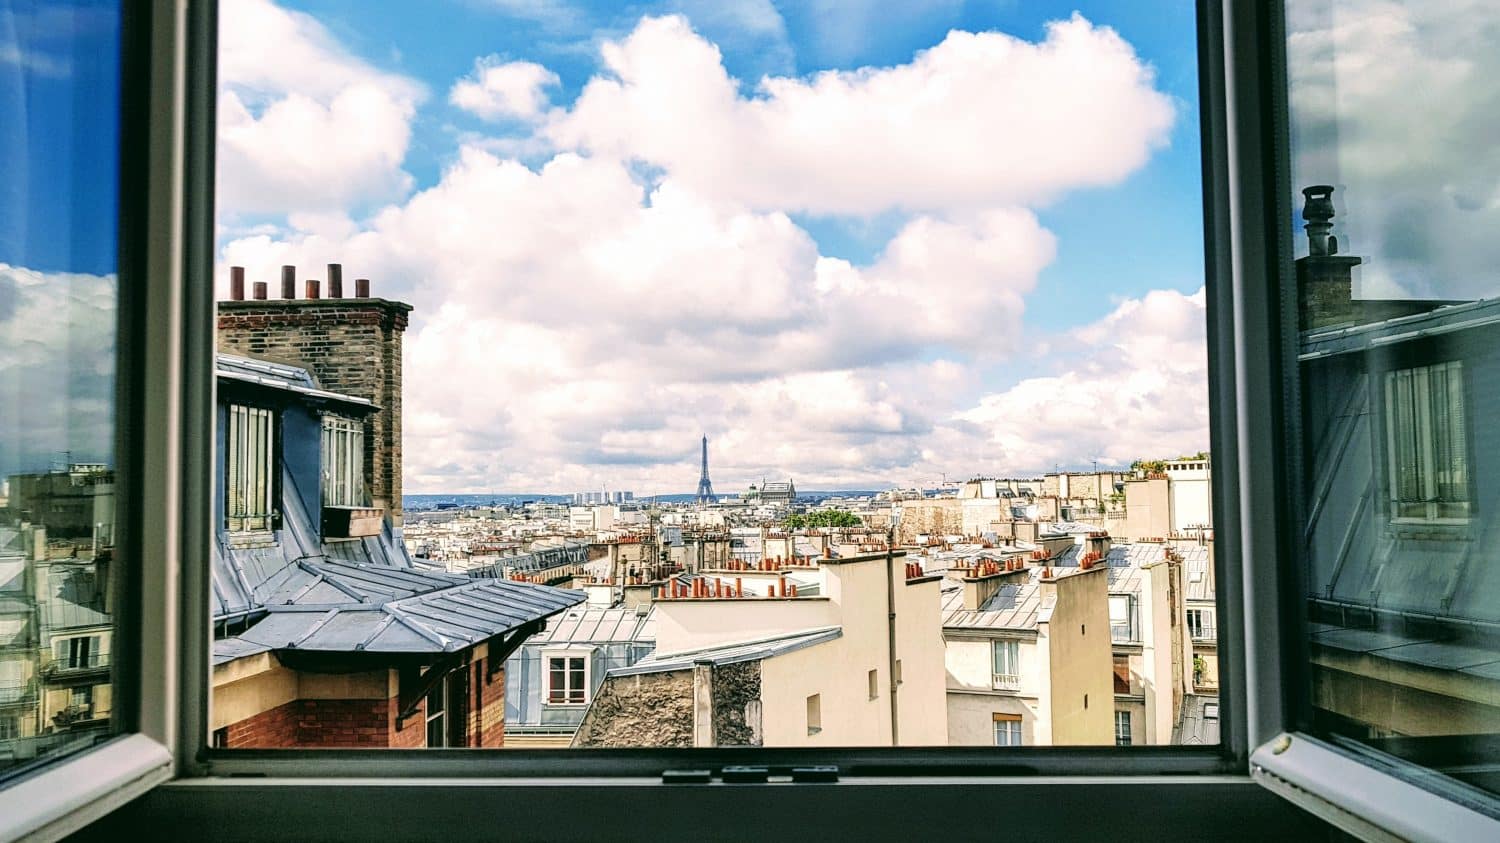 Janela no centro de Paris com vista para a Torre Eiffel, ilustrando post de Airbnb em Paris